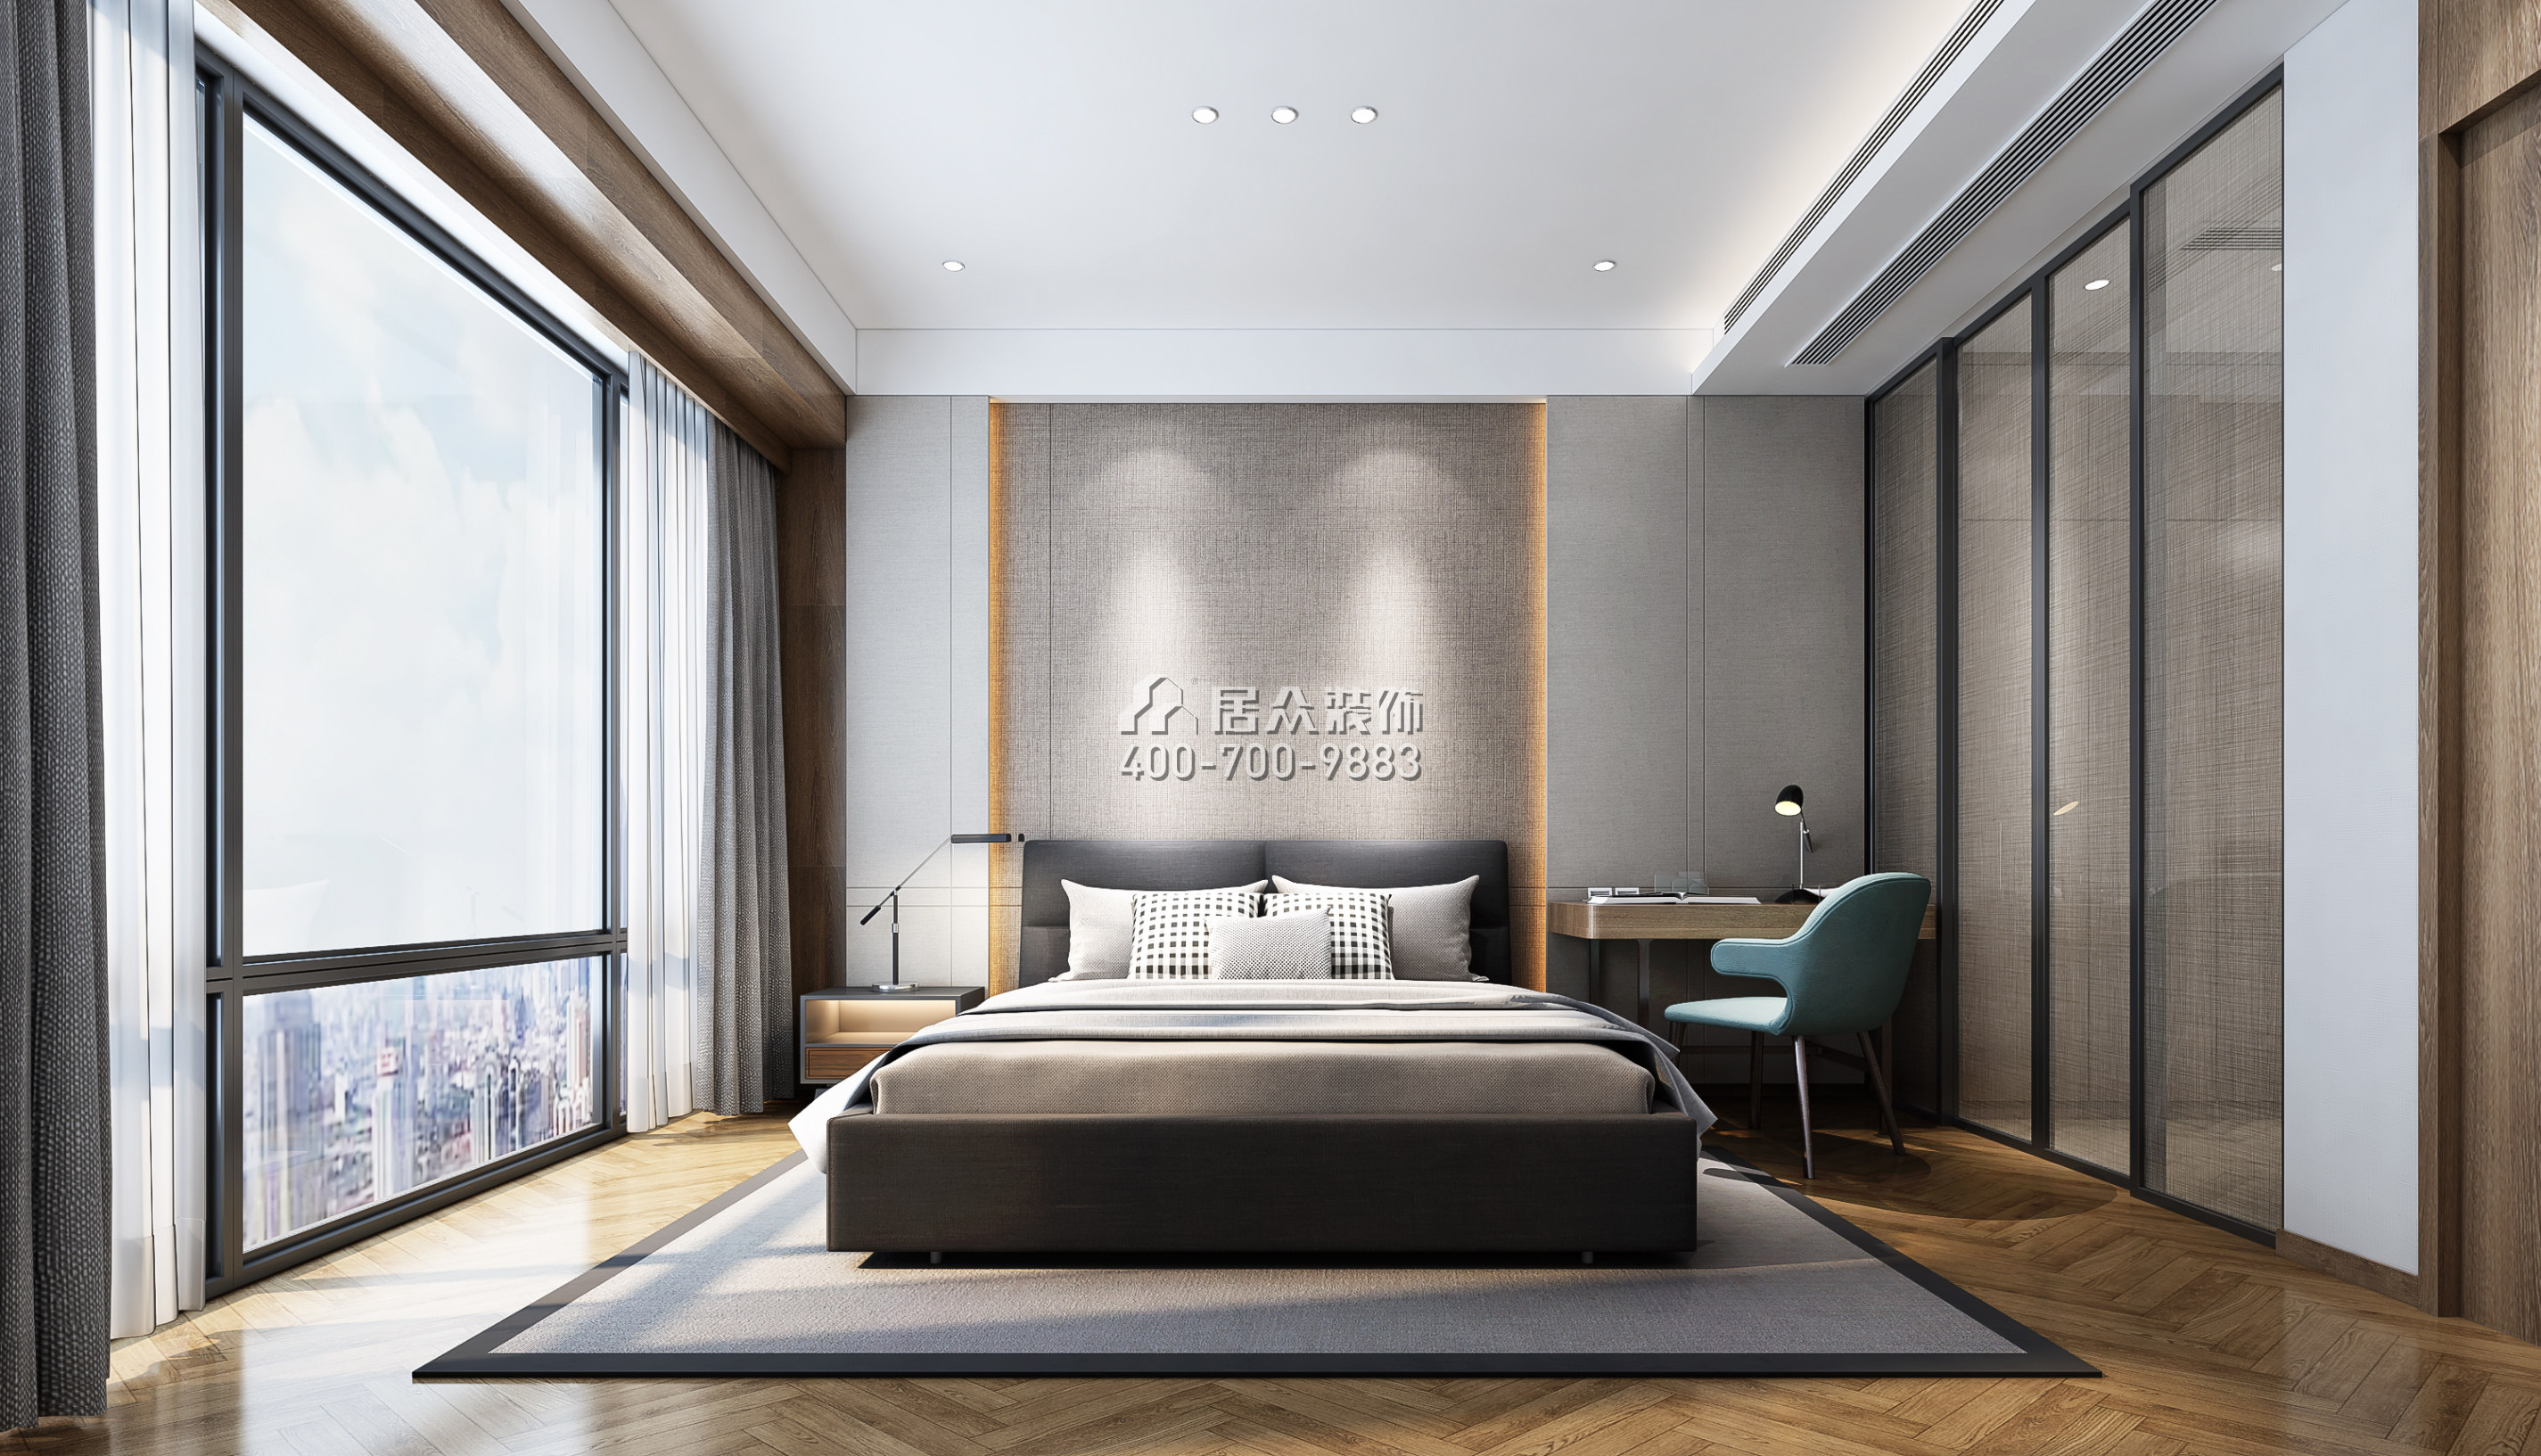 天鹅湖花园二期130平方米现代简约风格平层户型卧室开元官网效果图